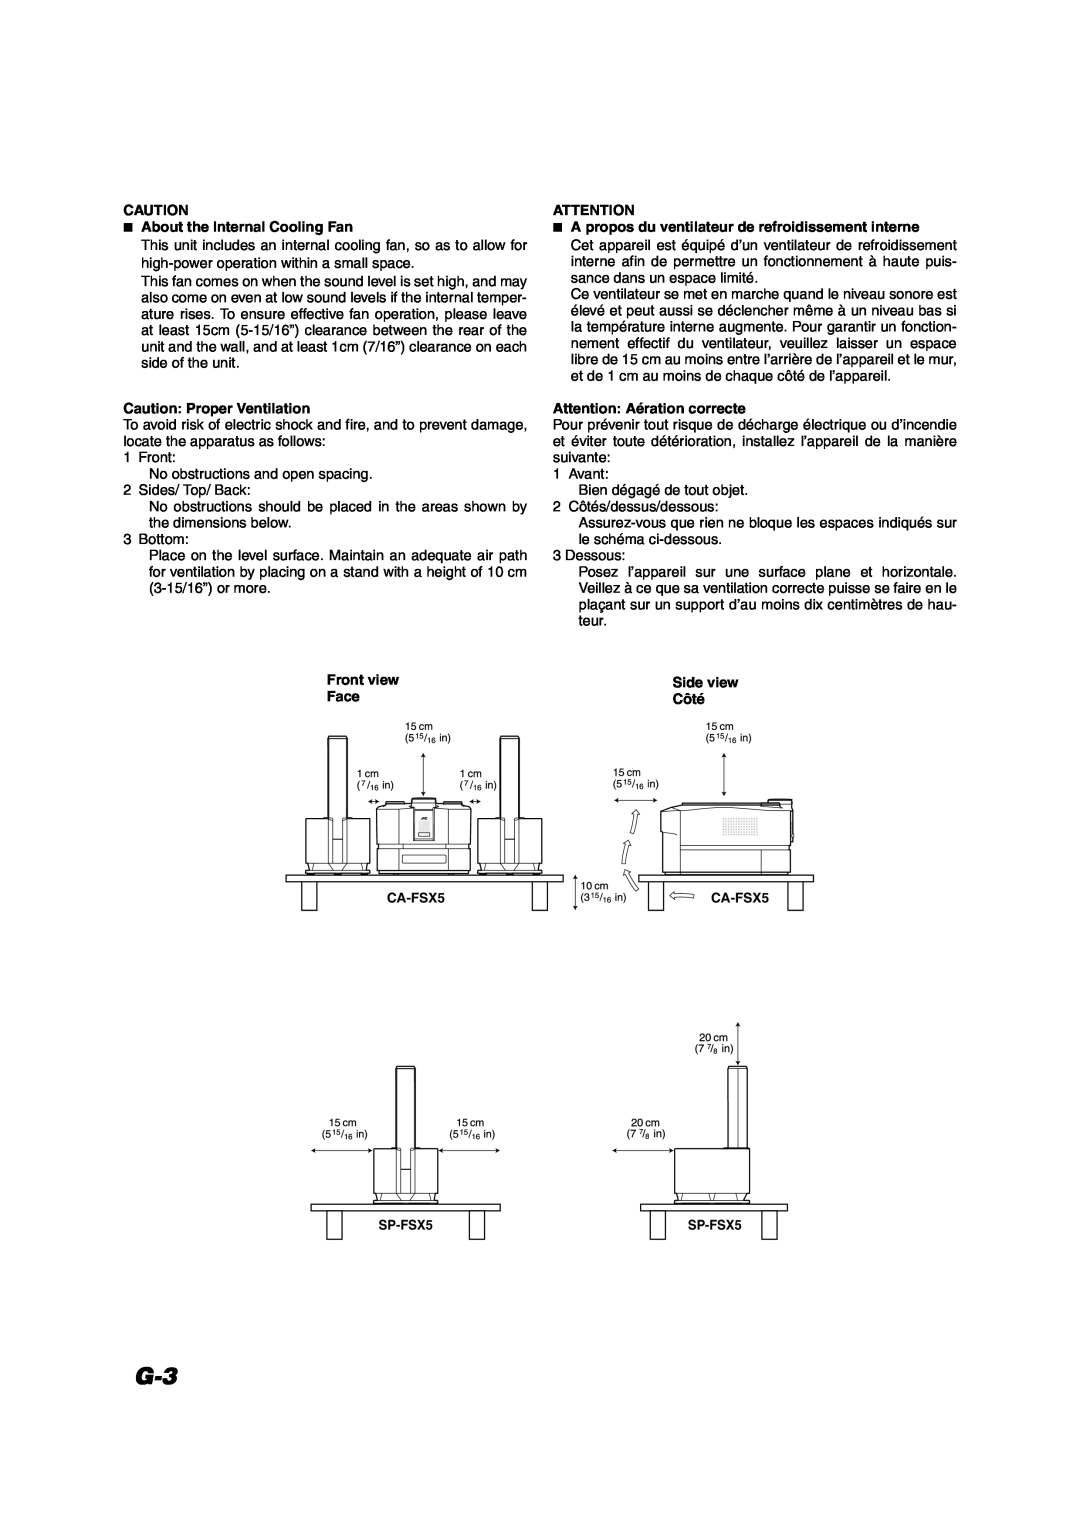 JVC FS-X5 manual About the Internal Cooling Fan, Caution Proper Ventilation, Front view Face, Attention Aération correcte 